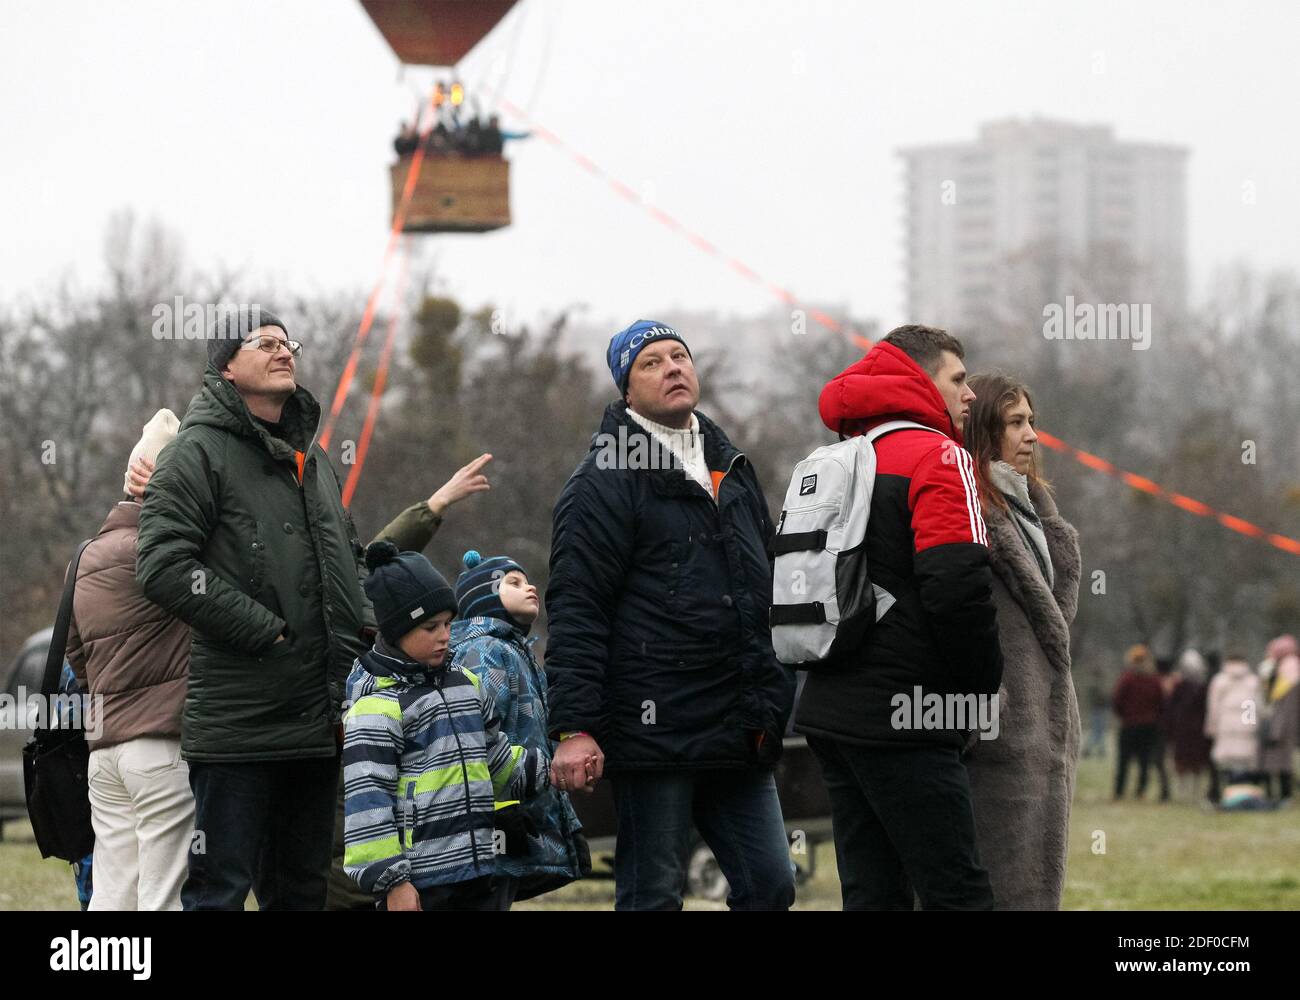 Ein Besucher schaut sich den Heißluftballon an, während des Festivals steigen die Besucher in den Himmel.das Heißluftballonfestival wird von der Gesellschaft für Heißluftballon und der Ukrainischen Luftfahrtgesellschaft organisiert, Ein Besucher kann auf einen riesigen Ballon in der Höhe eines fünfstöckigen Gebäudes klettern und Fotos machen. Die Veranstaltung wird anlässlich des Jubiläums des Starts des ersten Heißballons in der Geschichte der Menschheit organisiert. Vor 237 Jahren starteten die Montgolfier-Brüder ihre Erfindung in Paris. Seitdem begann die Ära der Luftfahrt. Stockfoto